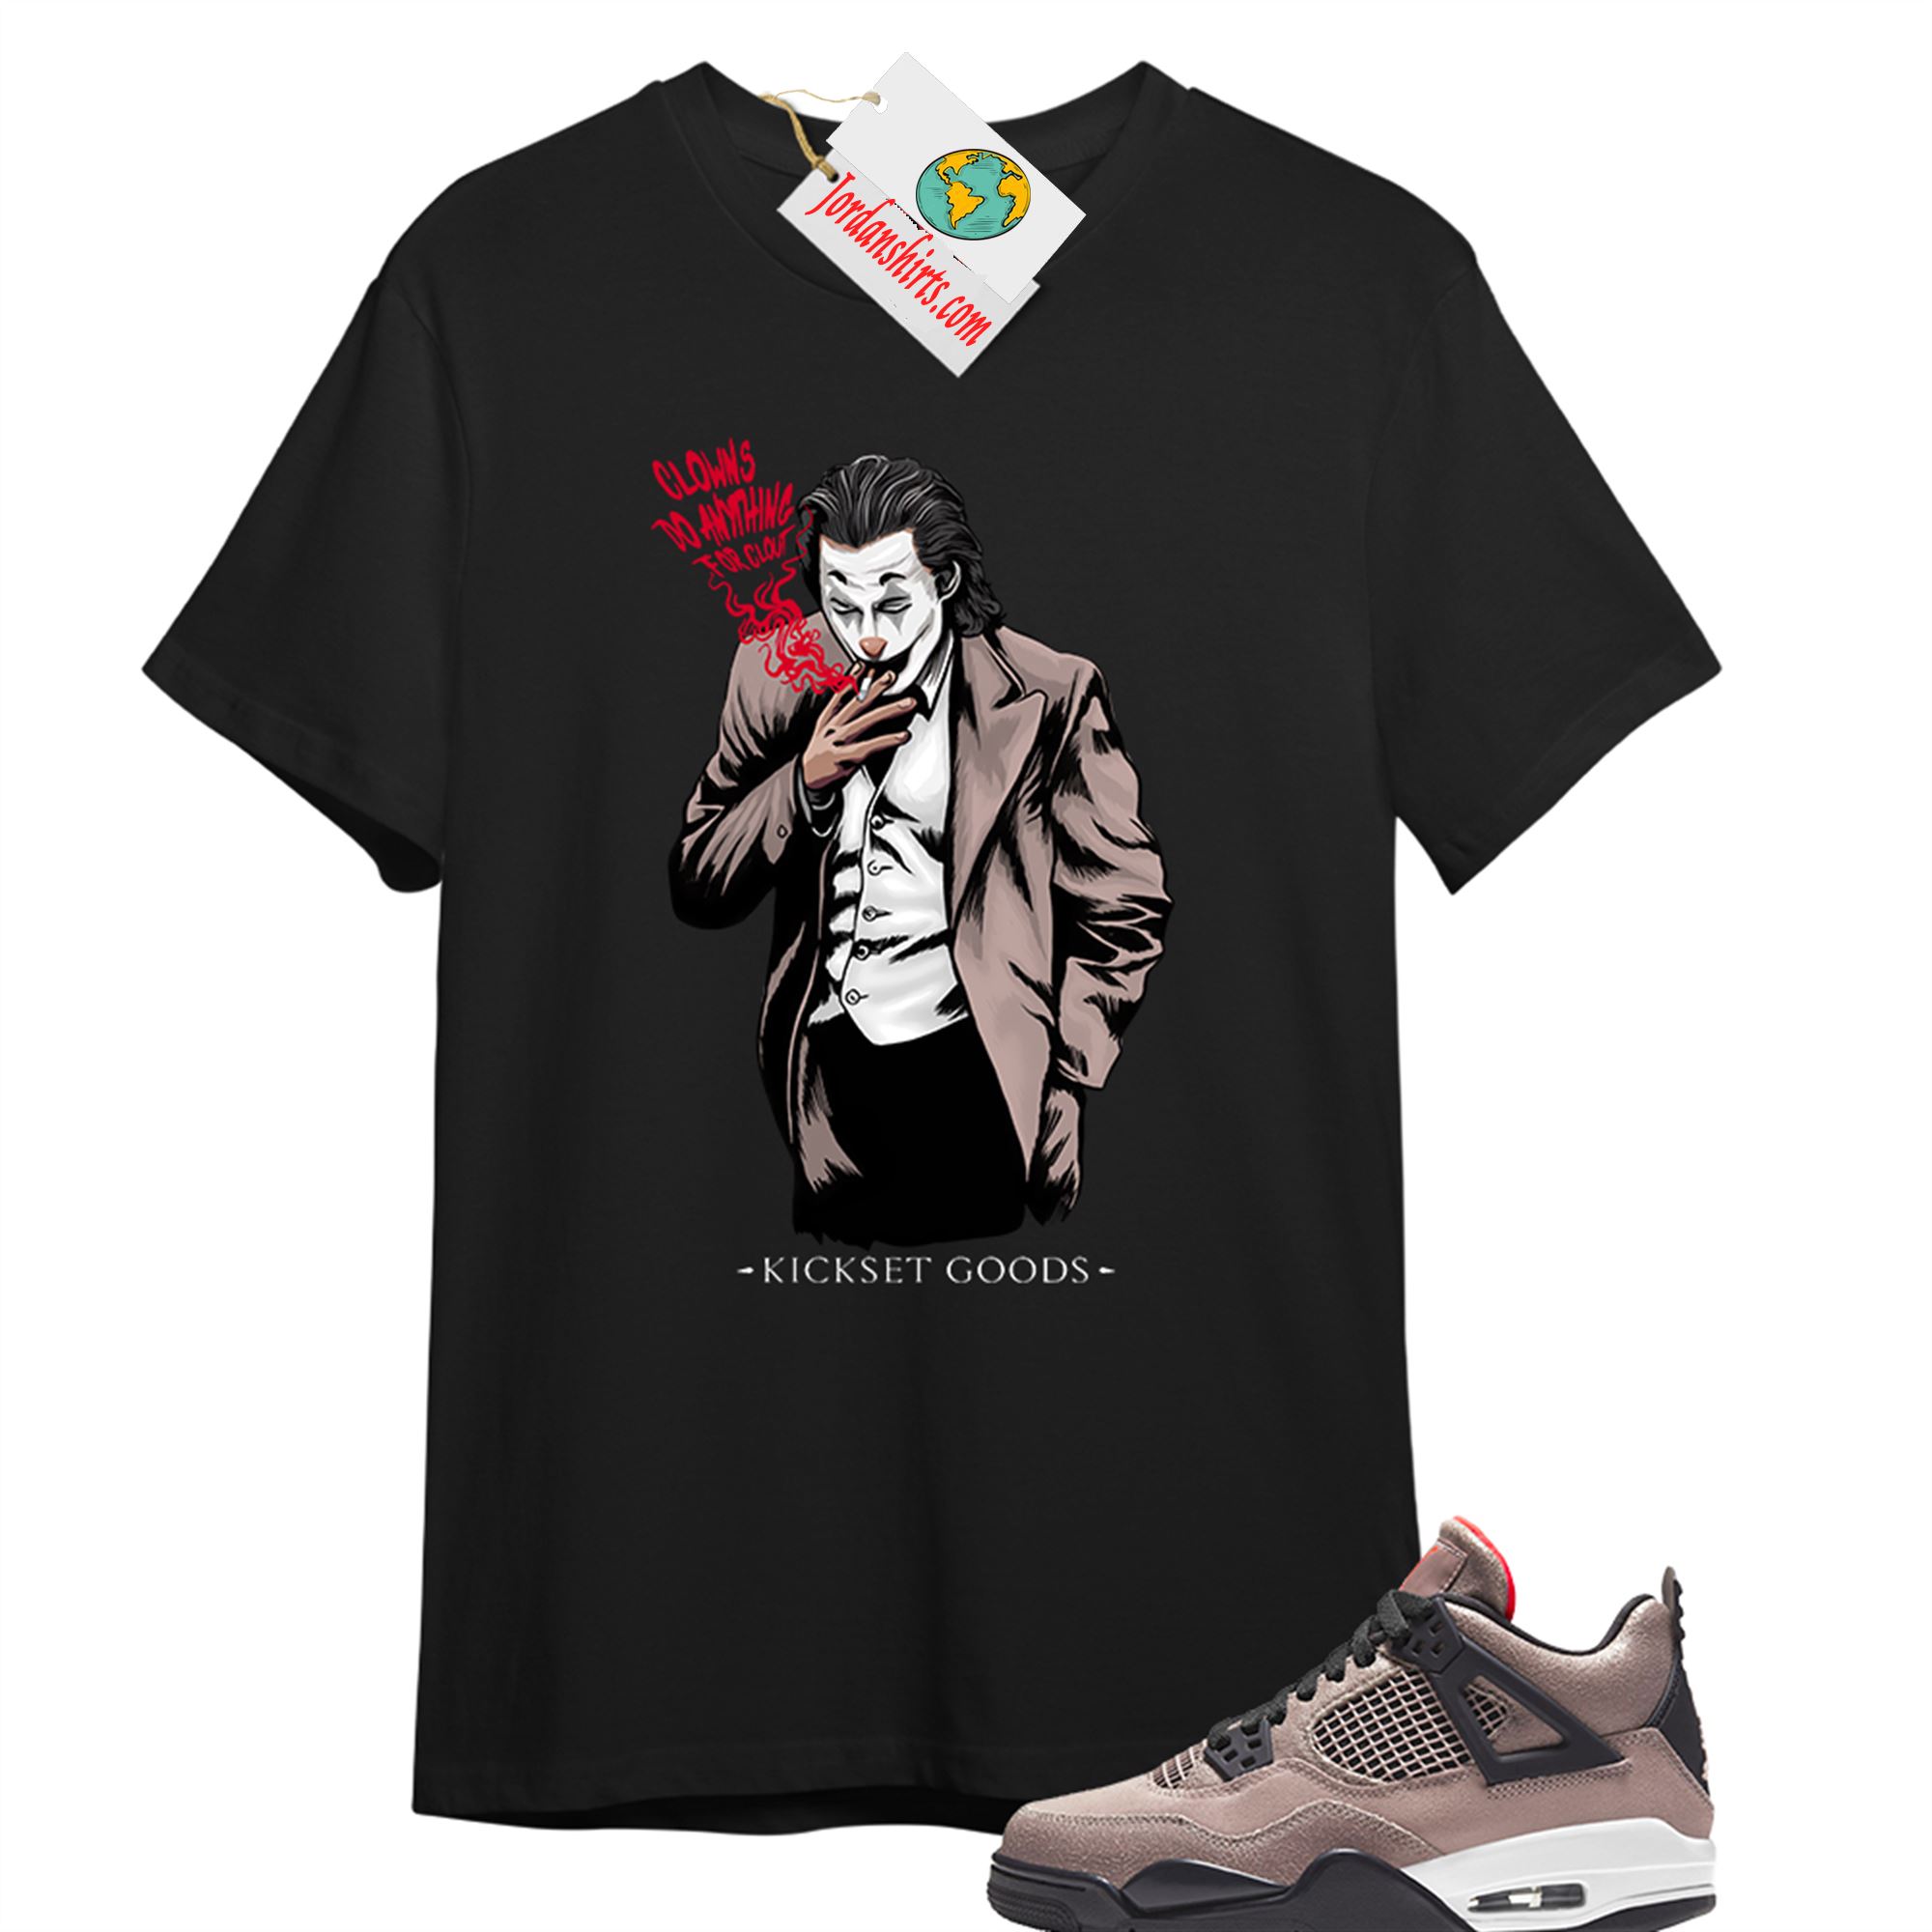 Jordan 4 Shirt, Joker Black T-shirt Air Jordan 4 Taupe Haze 4s Size Up To 5xl